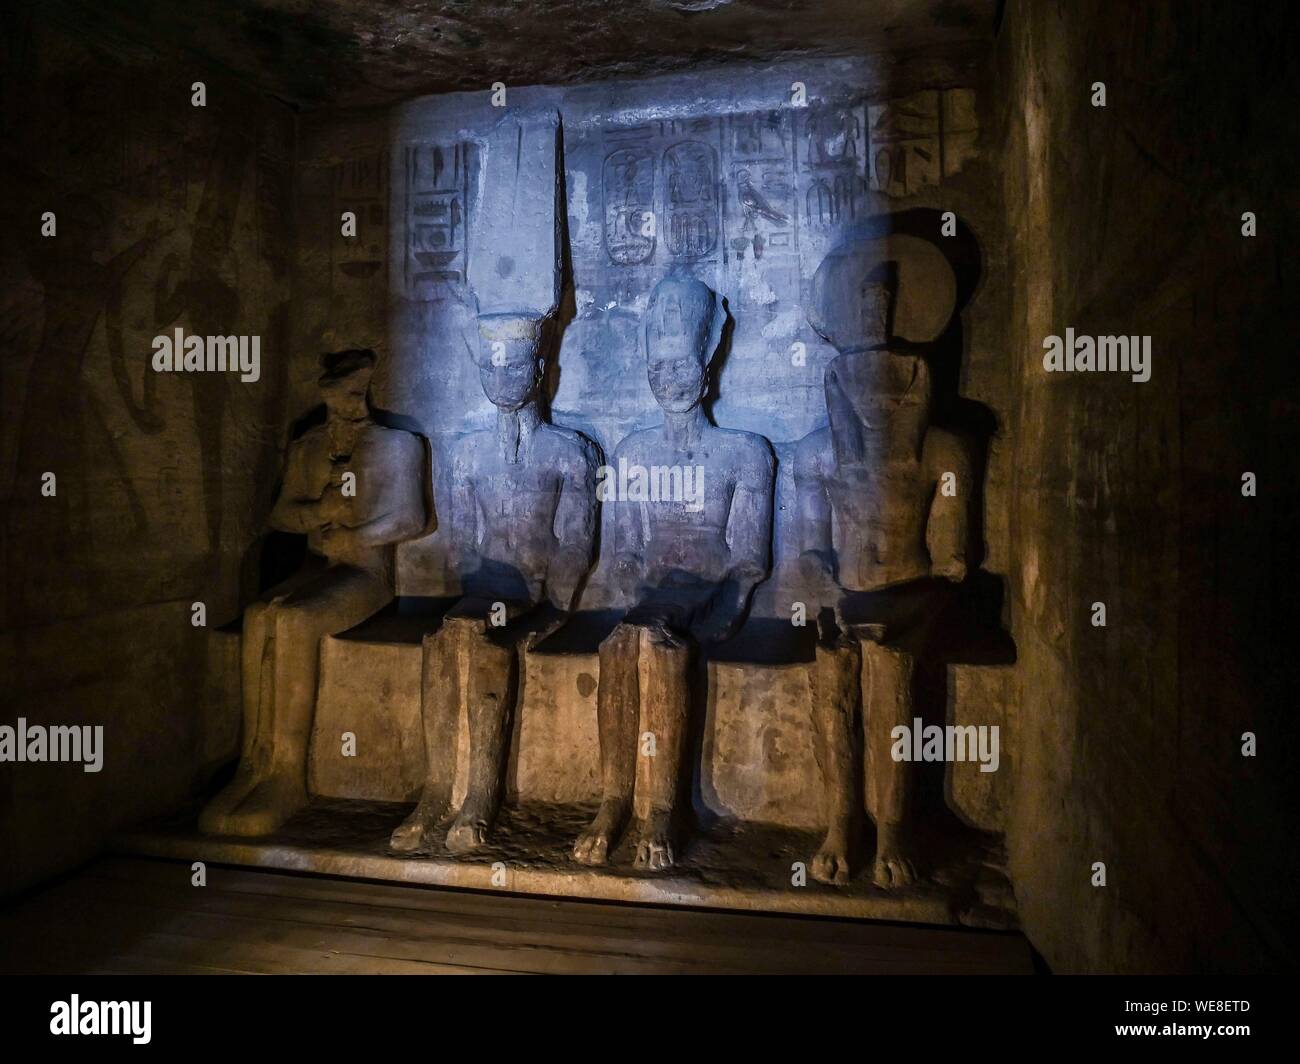 Ägypten, Ägypten, Nubien, Abu Simbel, UNESCO-Weltkulturerbe, im Tempel von Ramses II., am unteren Rand des Naos, die vier Statuen stellen von Ptah, Rê - Horakhty, Ramsès II und Amon-Re links Stockfoto